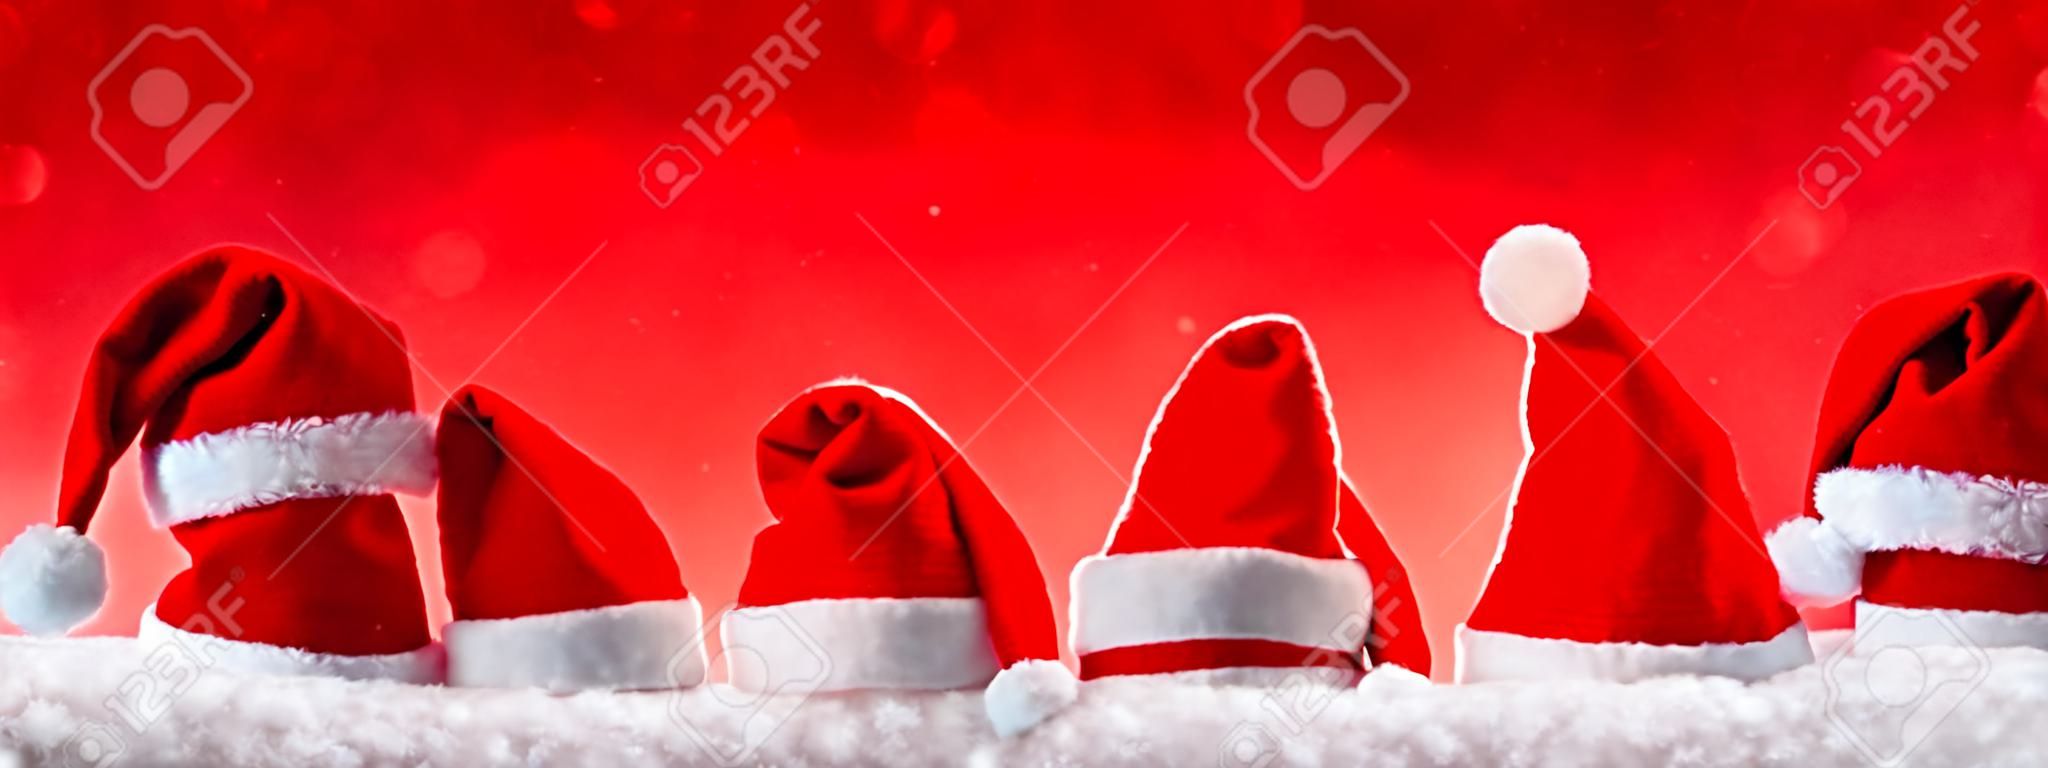 Sept rouge de Père Noël chapeaux isolés sur background.Christmas rouges sur fond rouge avec de Noël hats.Red chapeaux de Noël.